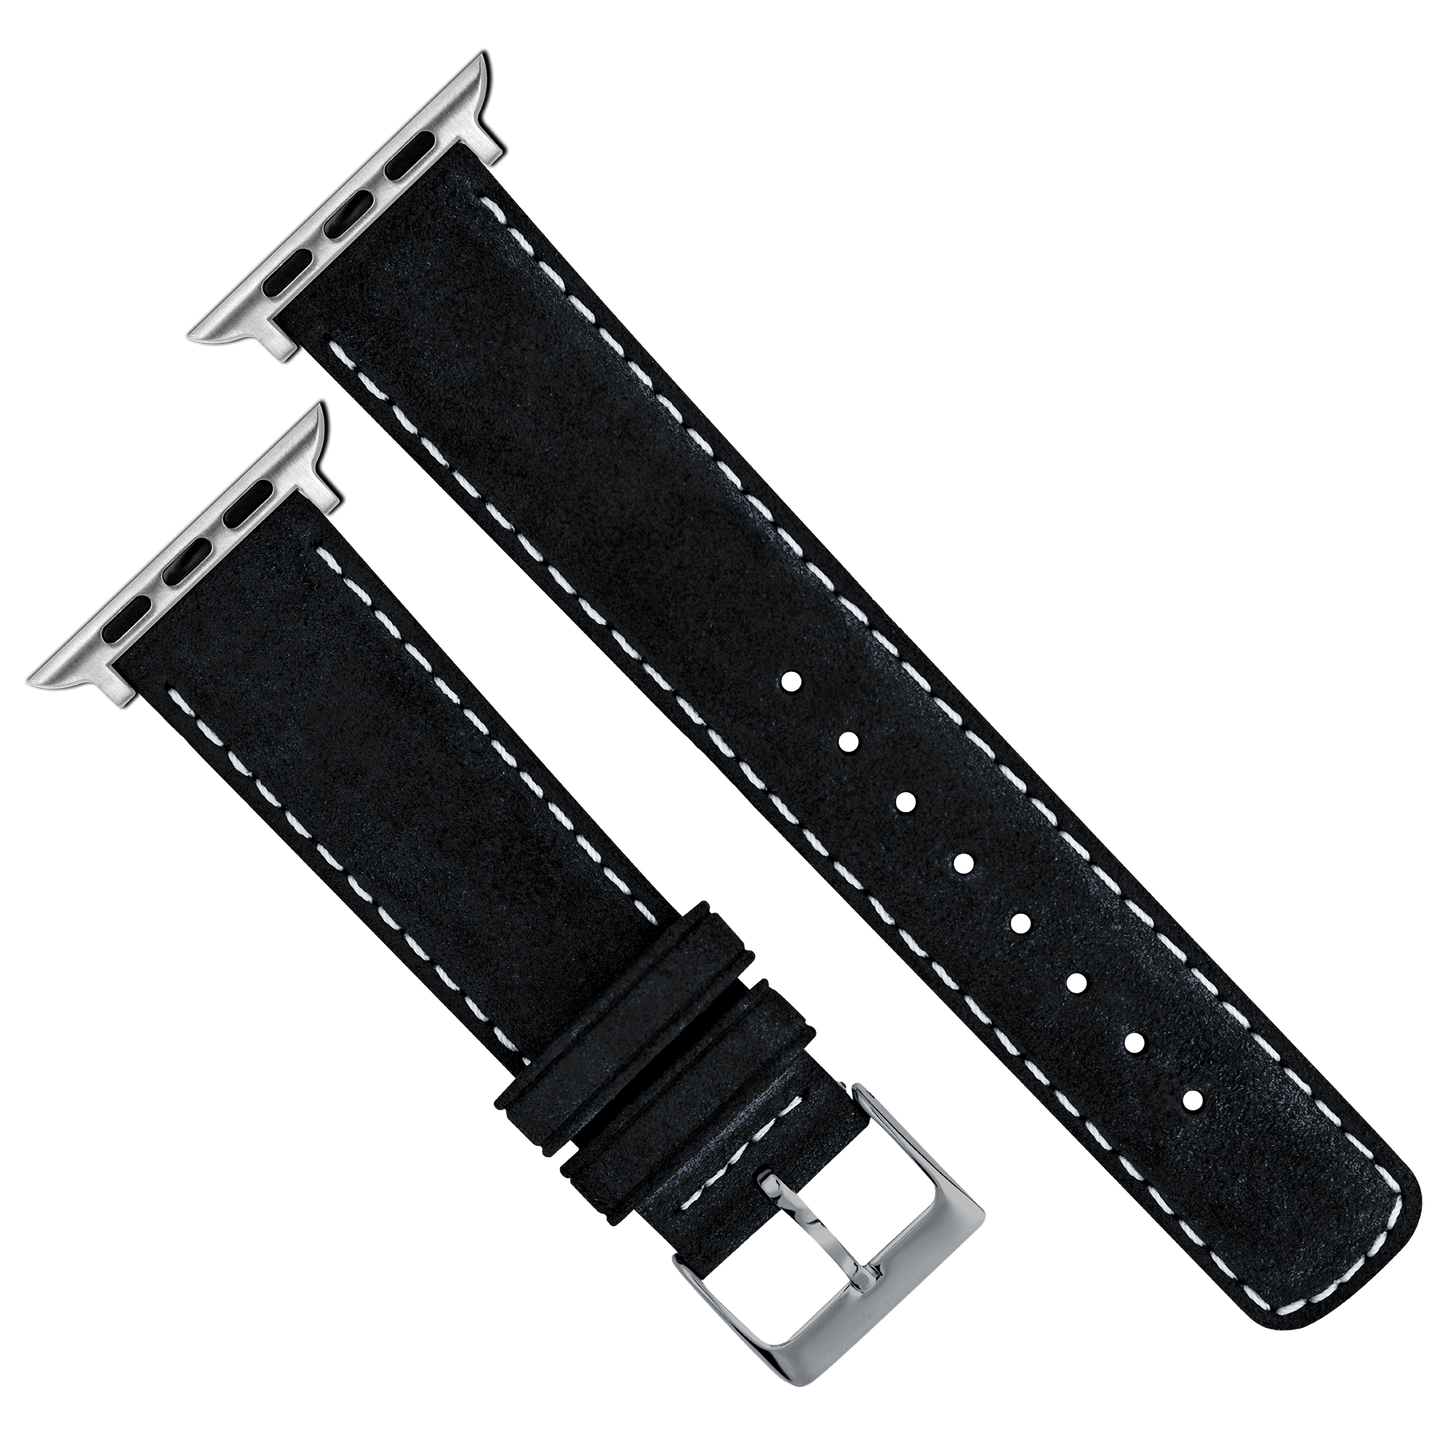 Apple Watch | Black Suede & Linen White Stitching - Barton Watch Bands